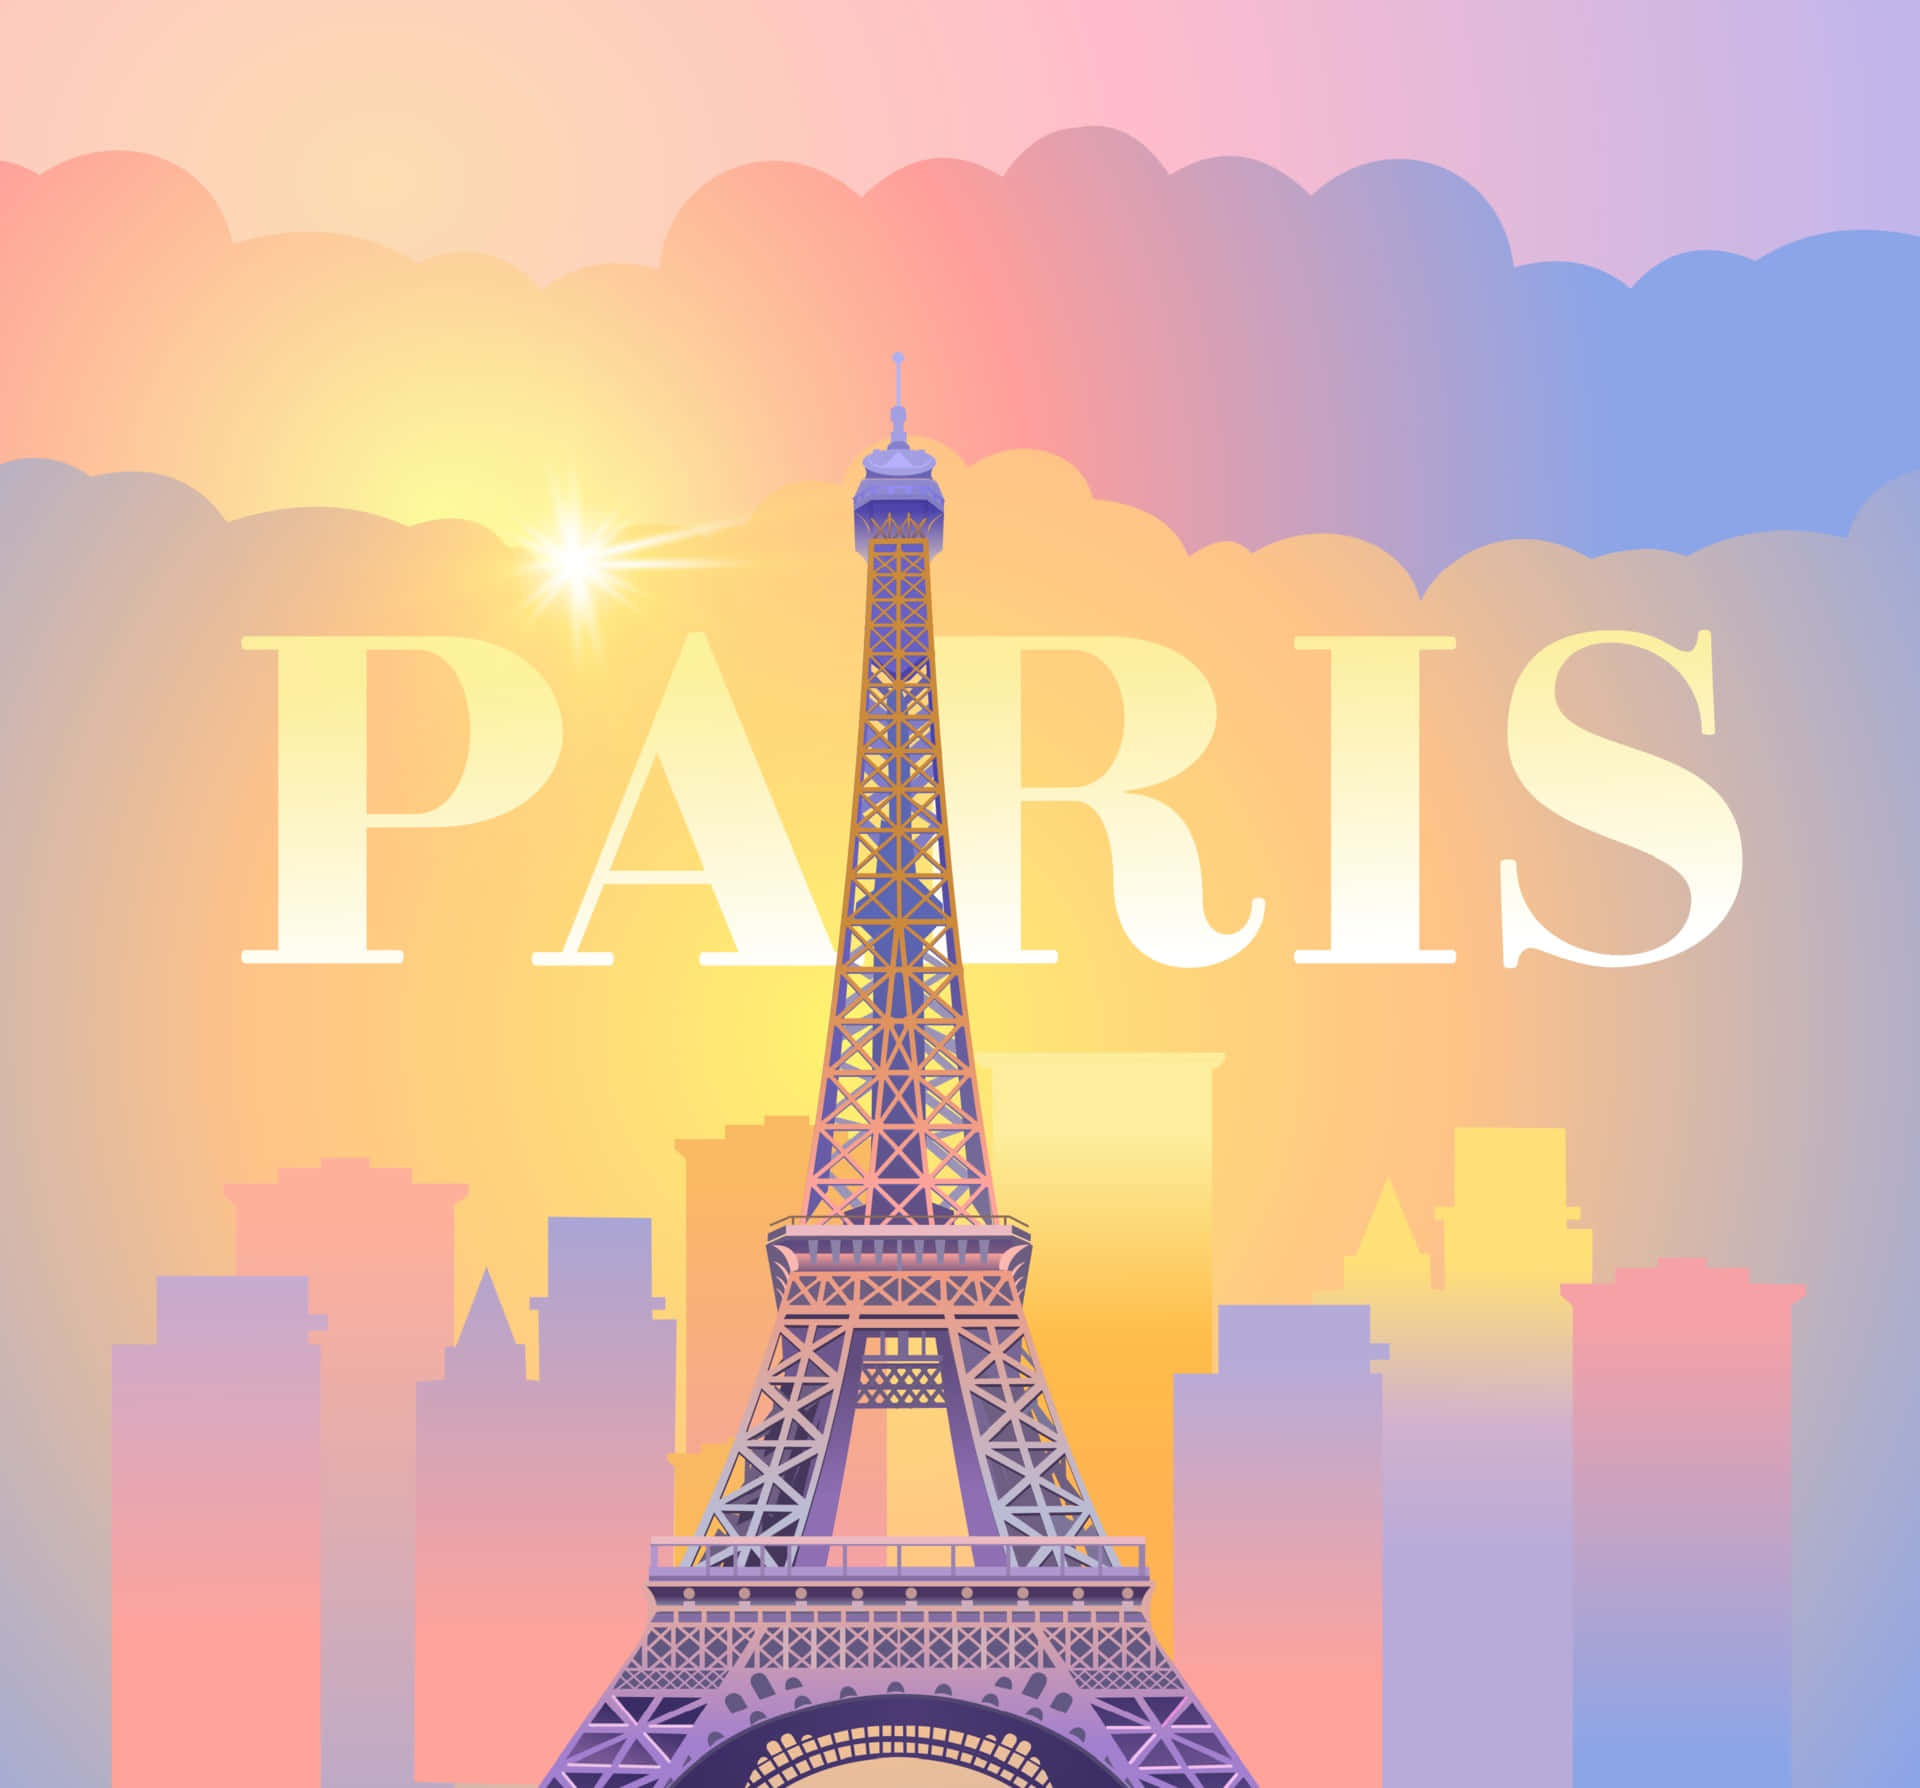 "The beauty of Paris"